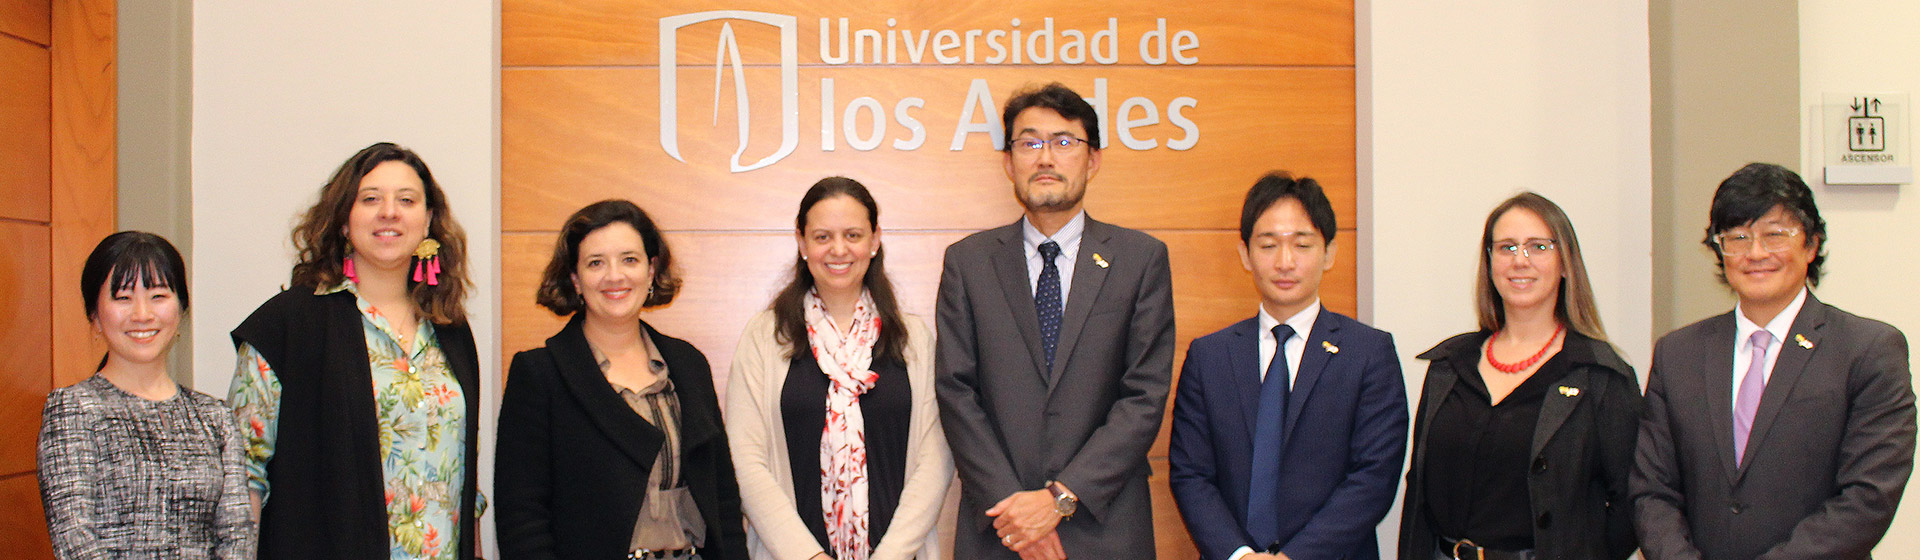 JICA en la Universidad de los Andes. 